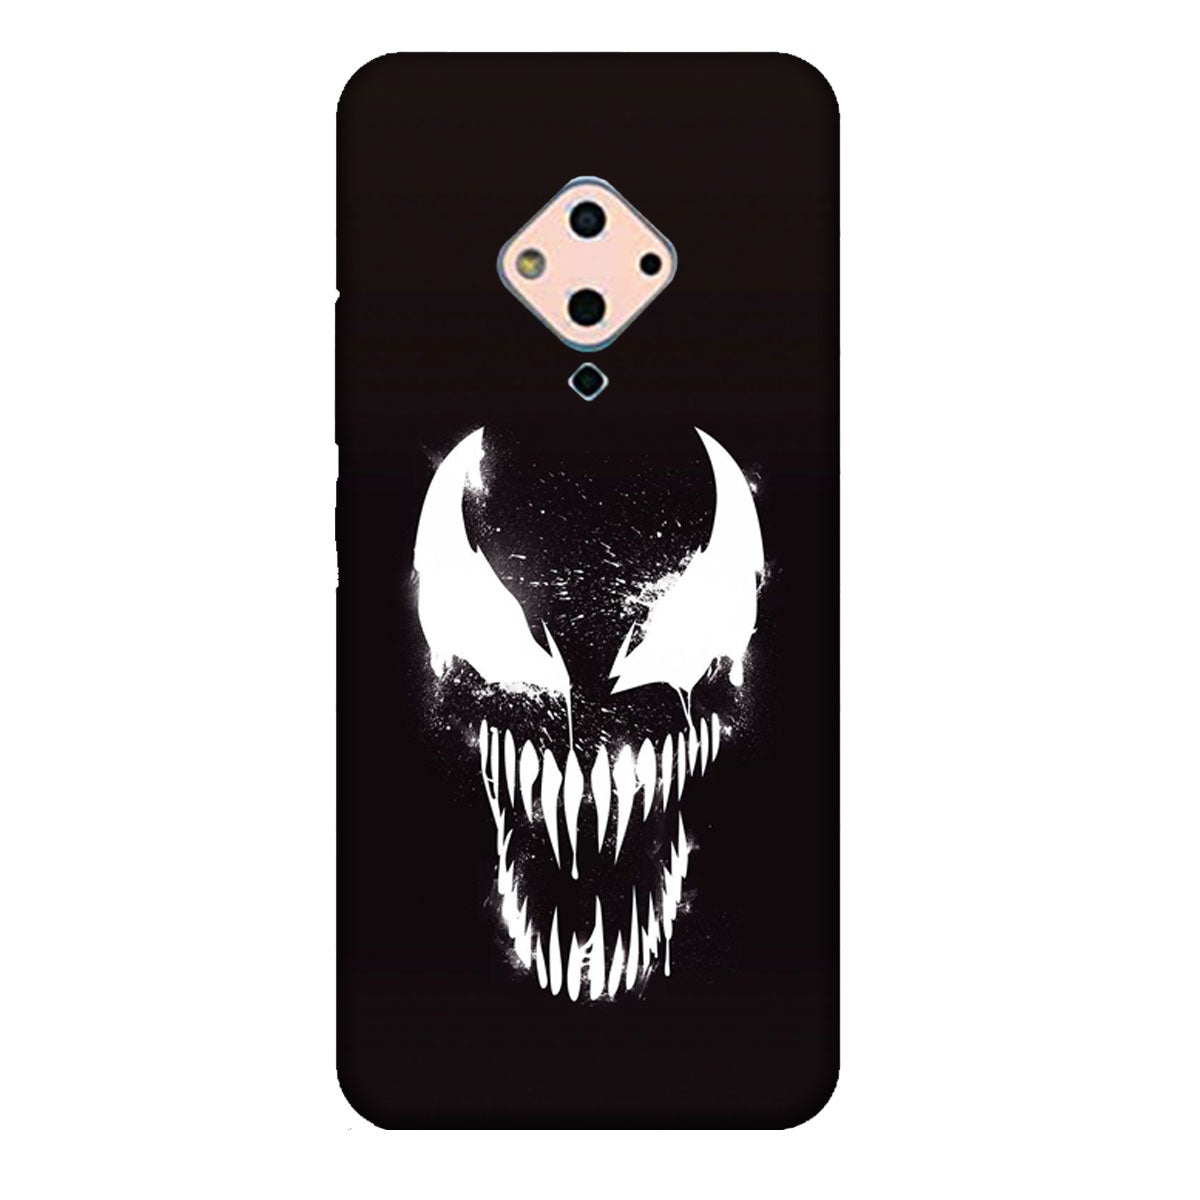 Venom - Mobile Phone Cover - Hard Case - Vivo